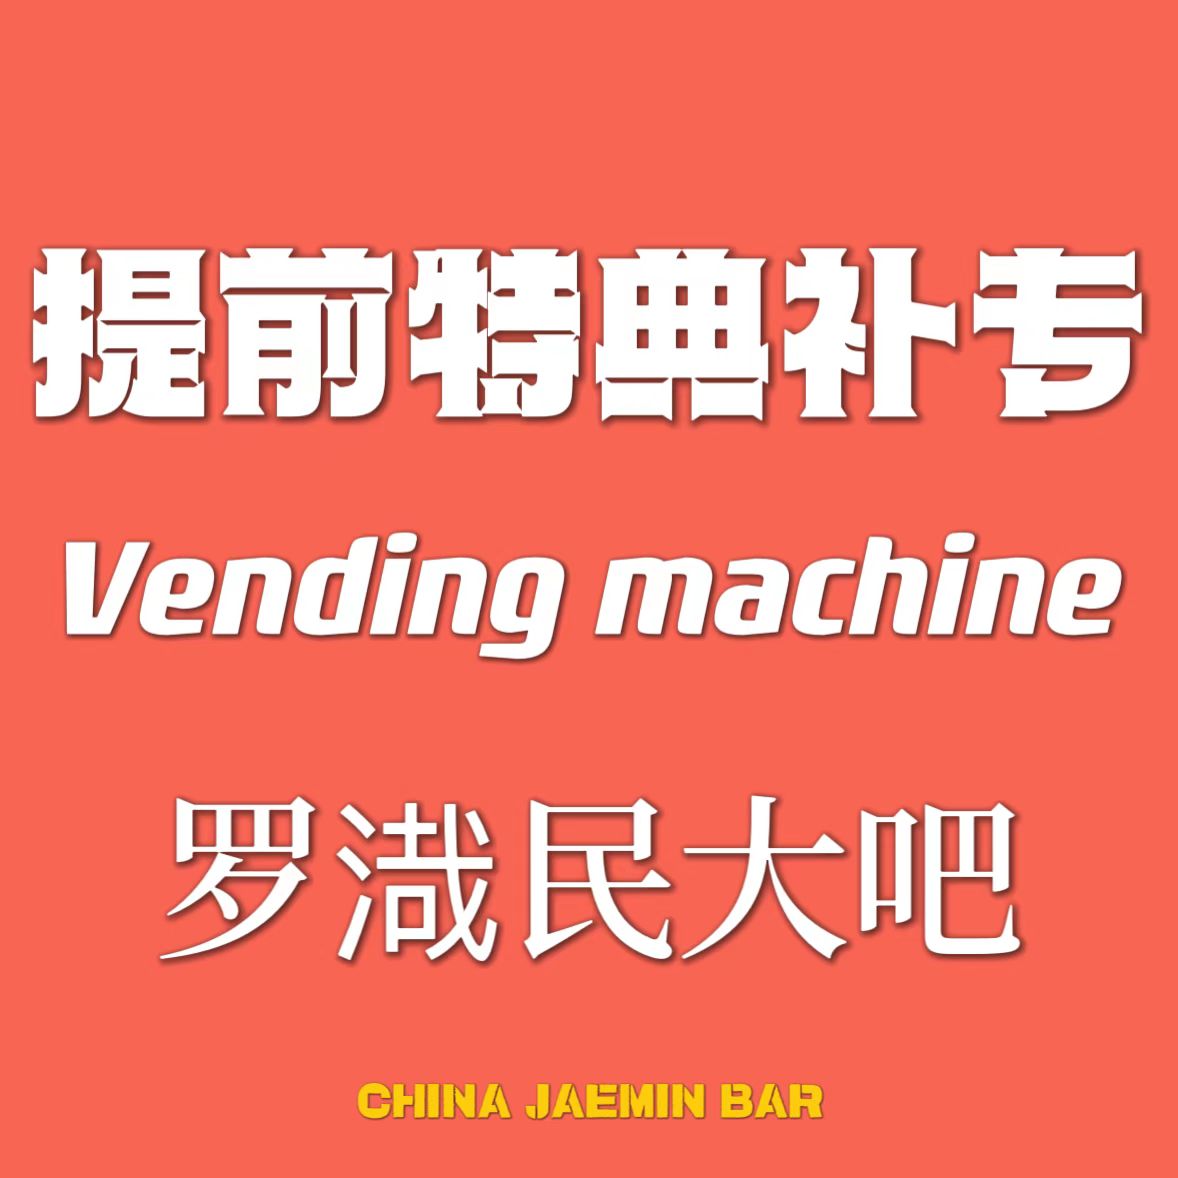 [全款 提前特典补专] NCT DREAM - 正规3辑 [ISTJ] (Vending Machine Ver.)_罗渽民吧